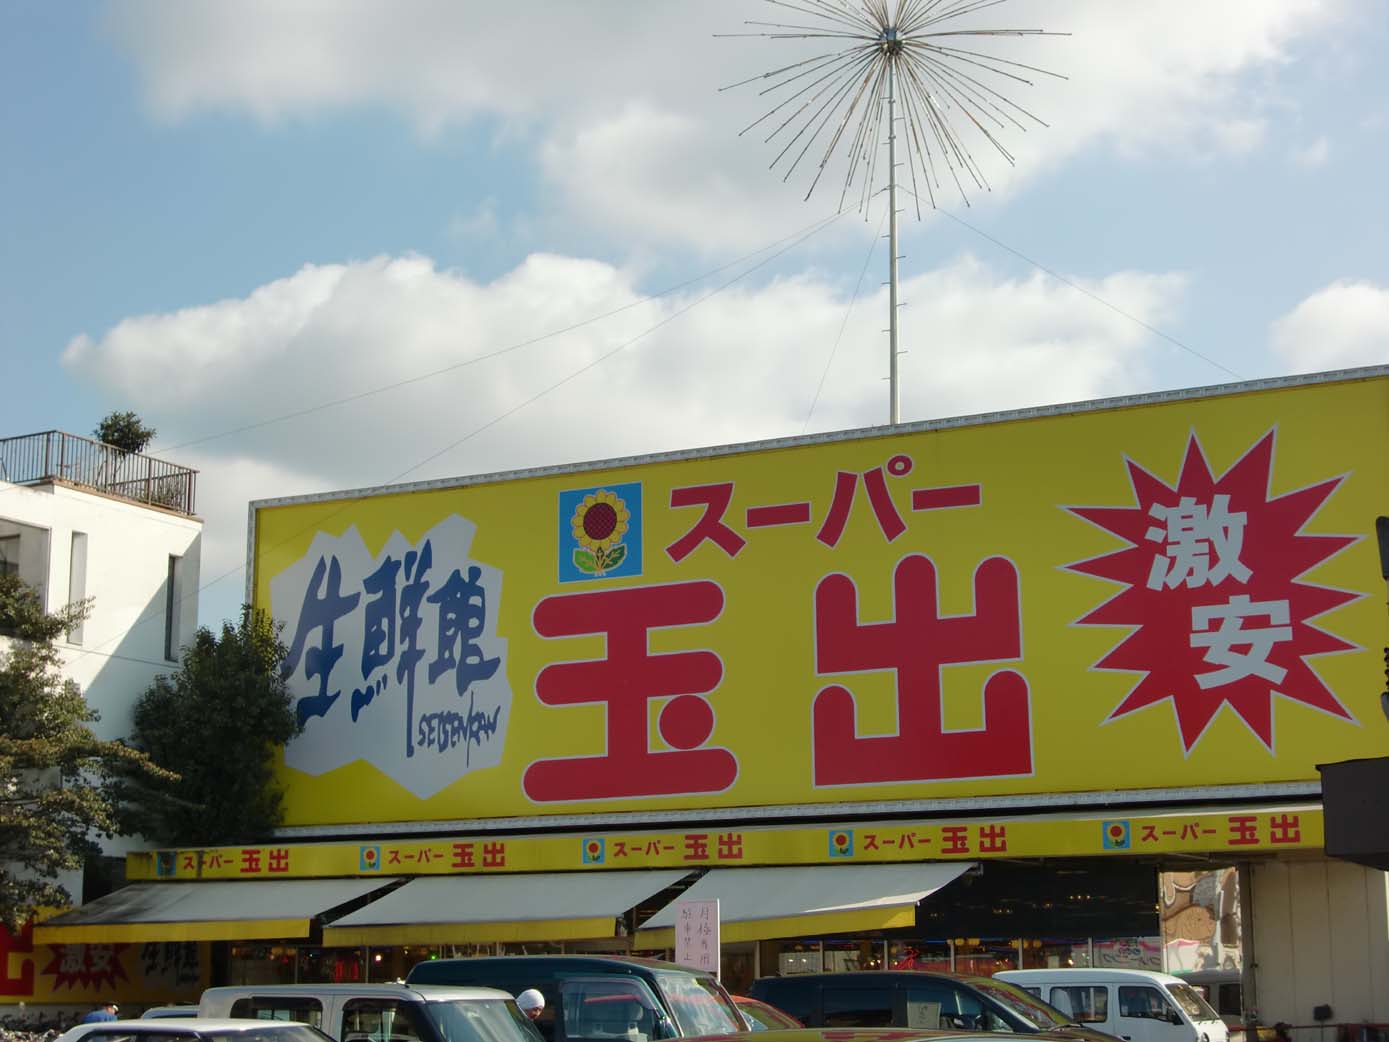 Supermarket. 566m to Super Tamade Amami store (Super)